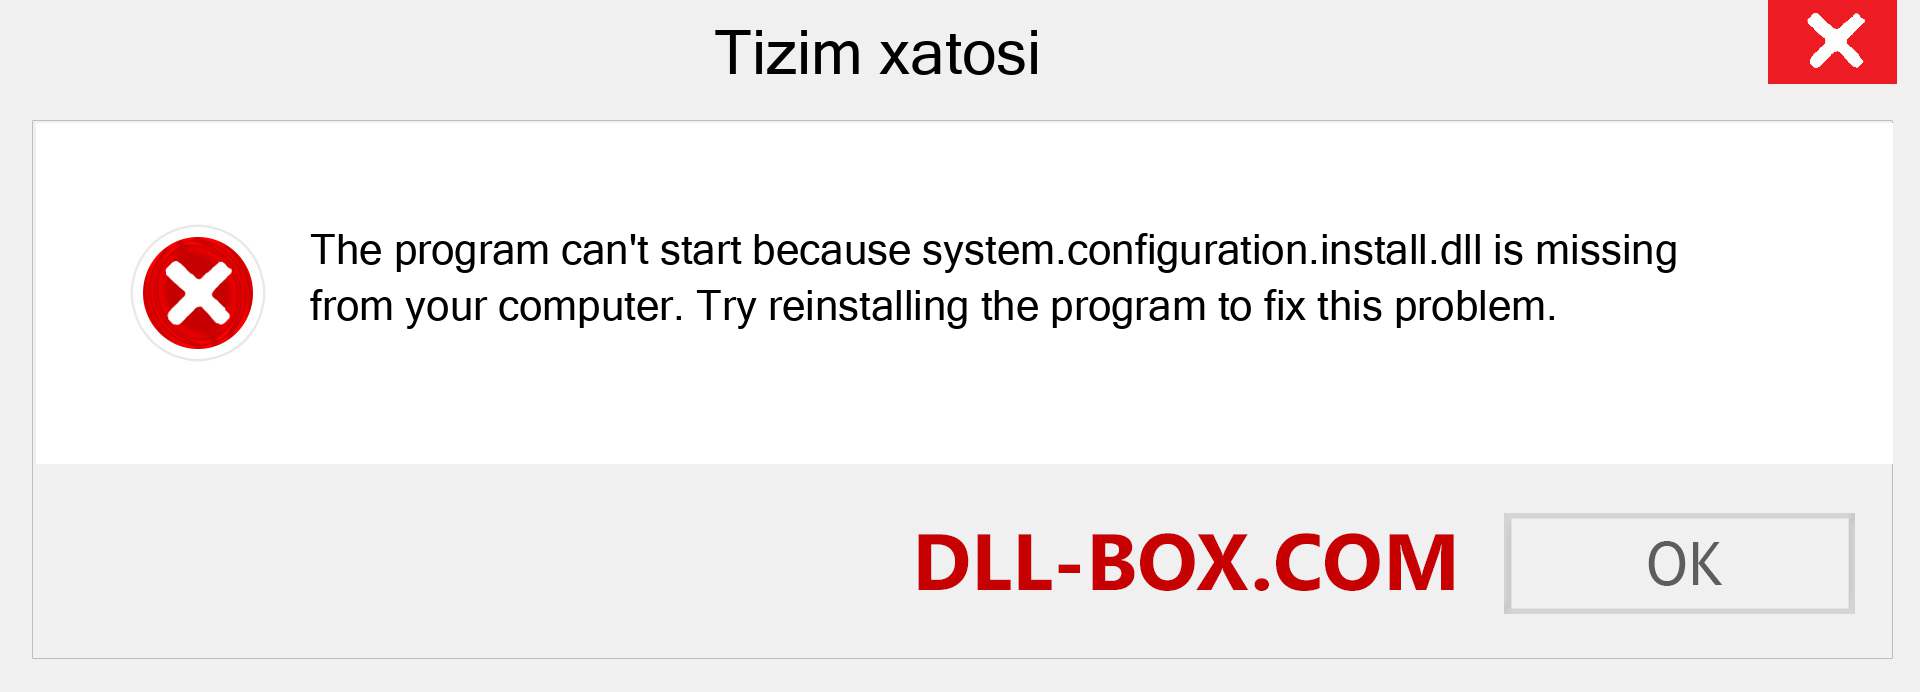 system.configuration.install.dll fayli yo'qolganmi?. Windows 7, 8, 10 uchun yuklab olish - Windowsda system.configuration.install dll etishmayotgan xatoni tuzating, rasmlar, rasmlar